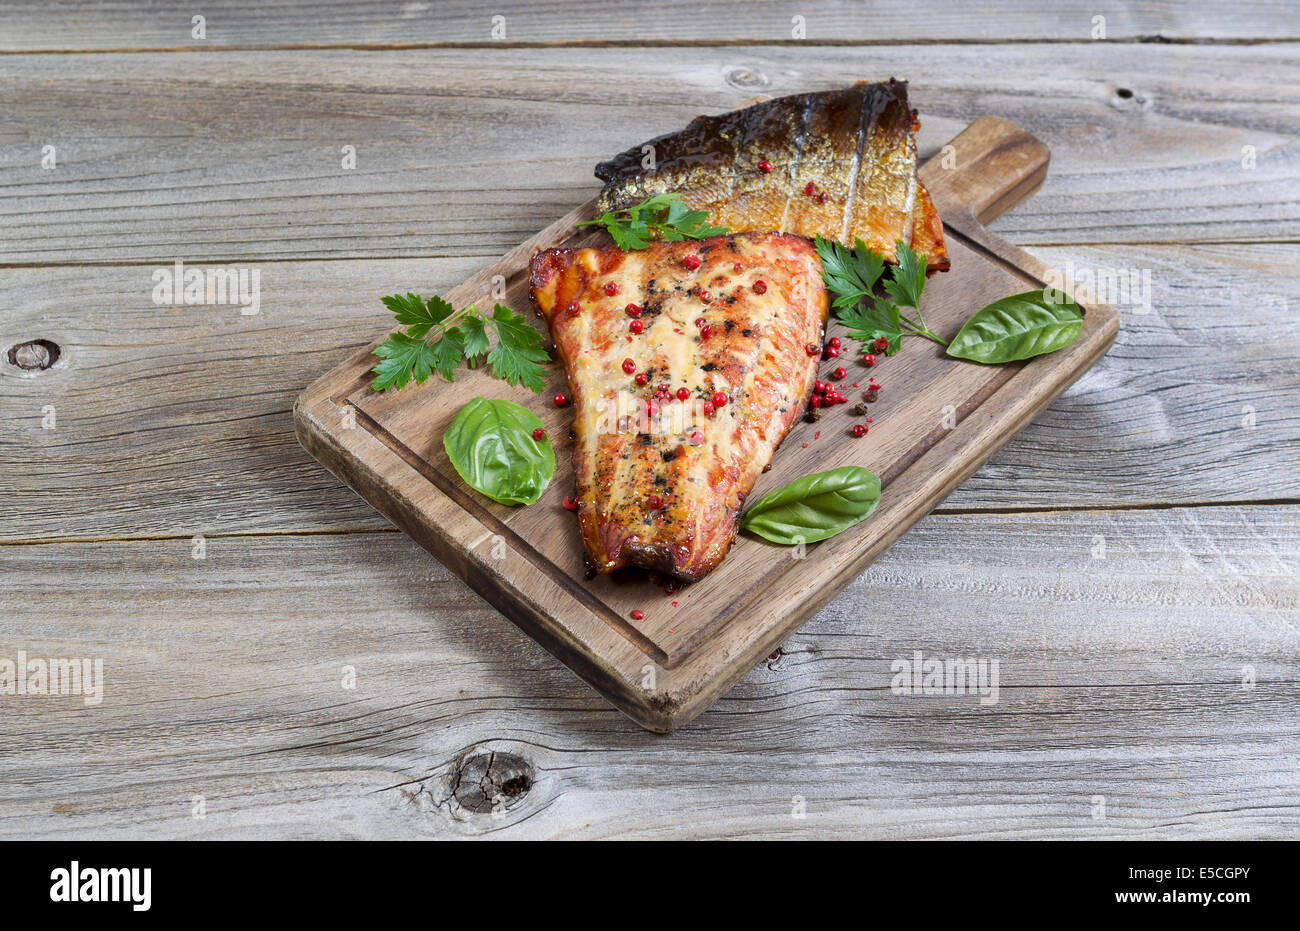 Vista horizontal de filetes de salmón ahumado, recién salida de la cocina, con aliño en servir a bordo con madera rústica debajo Foto de stock